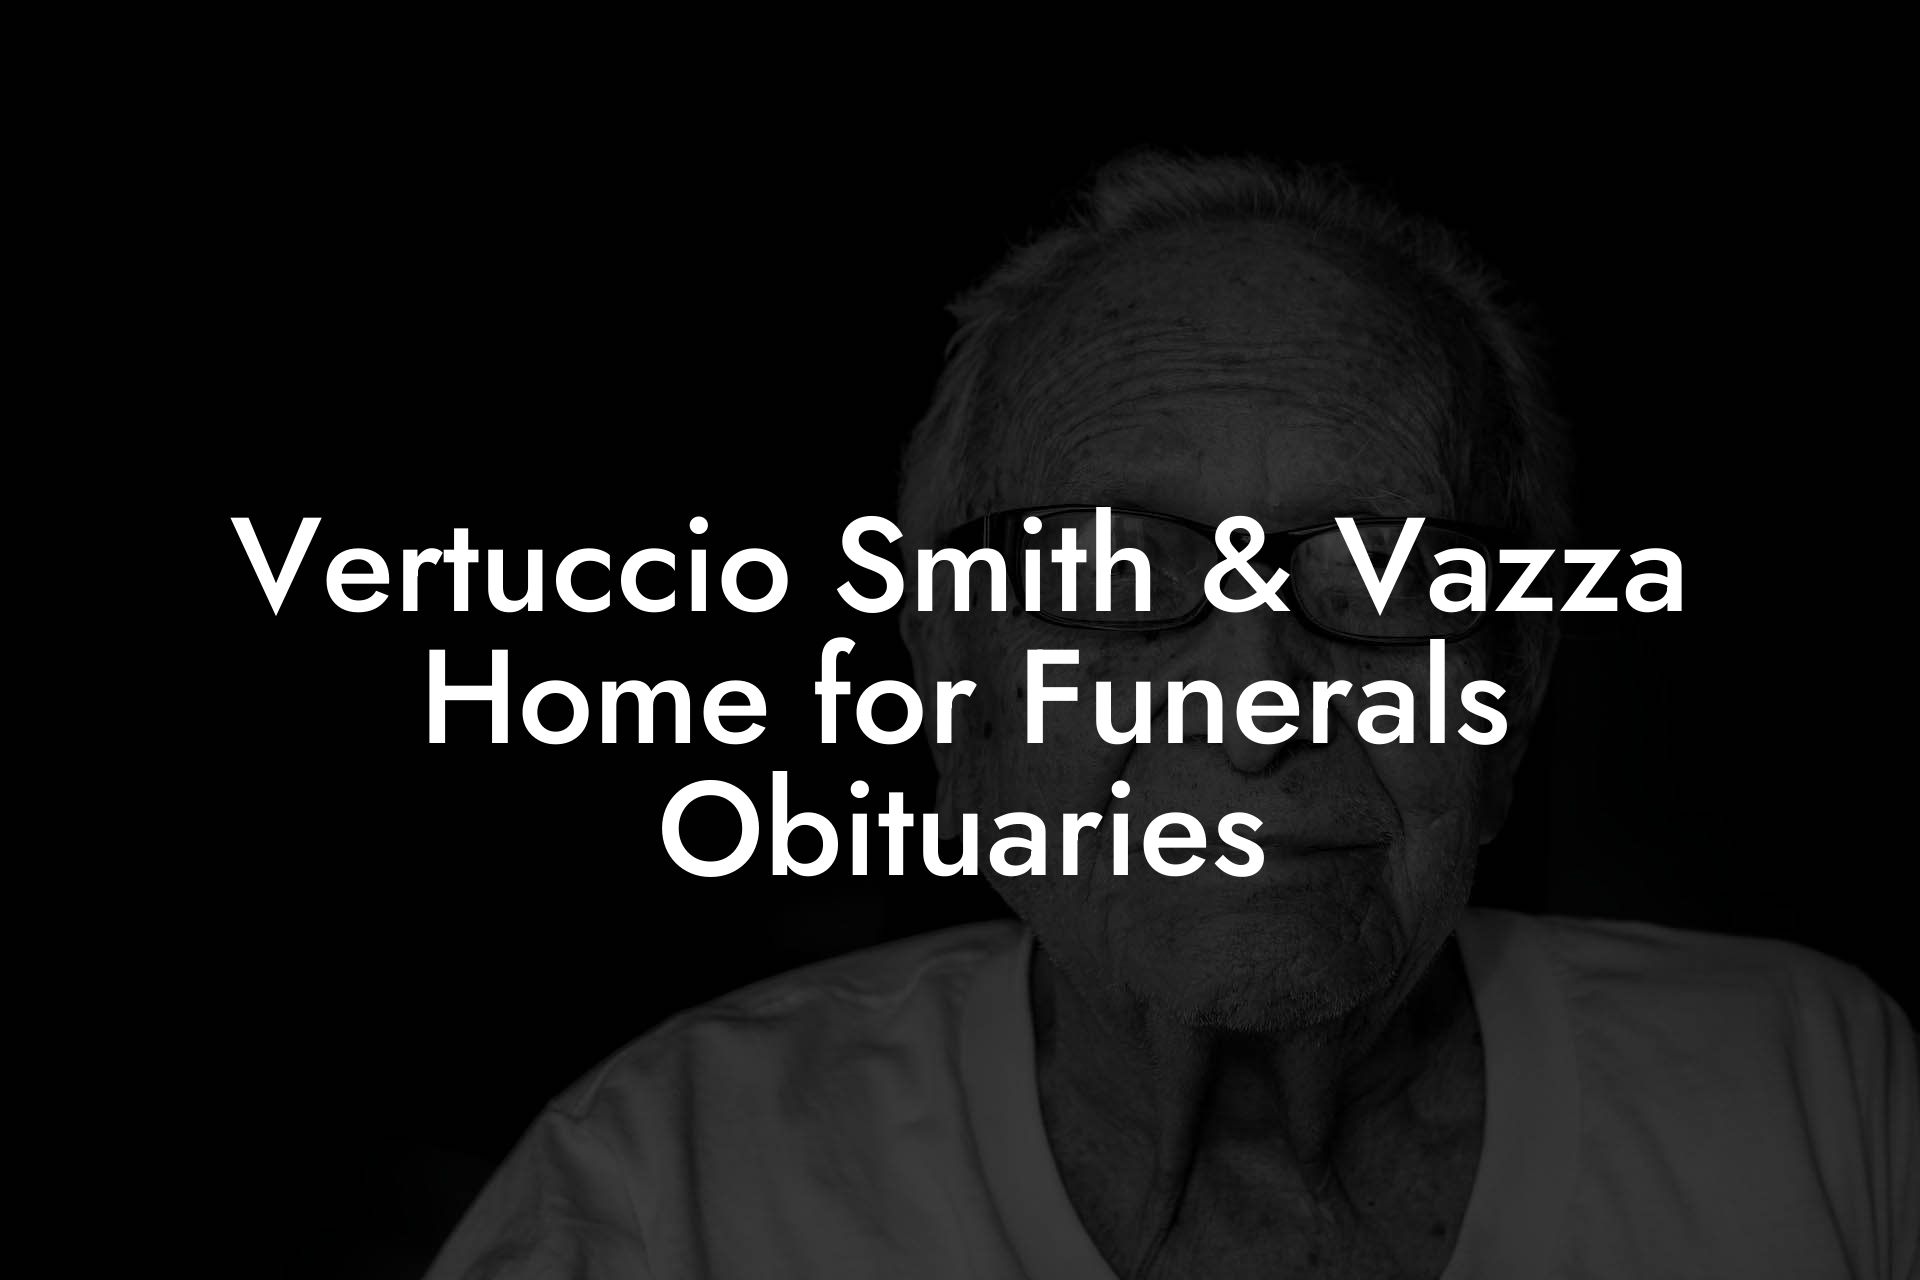 Vertuccio Smith & Vazza Home for Funerals Obituaries